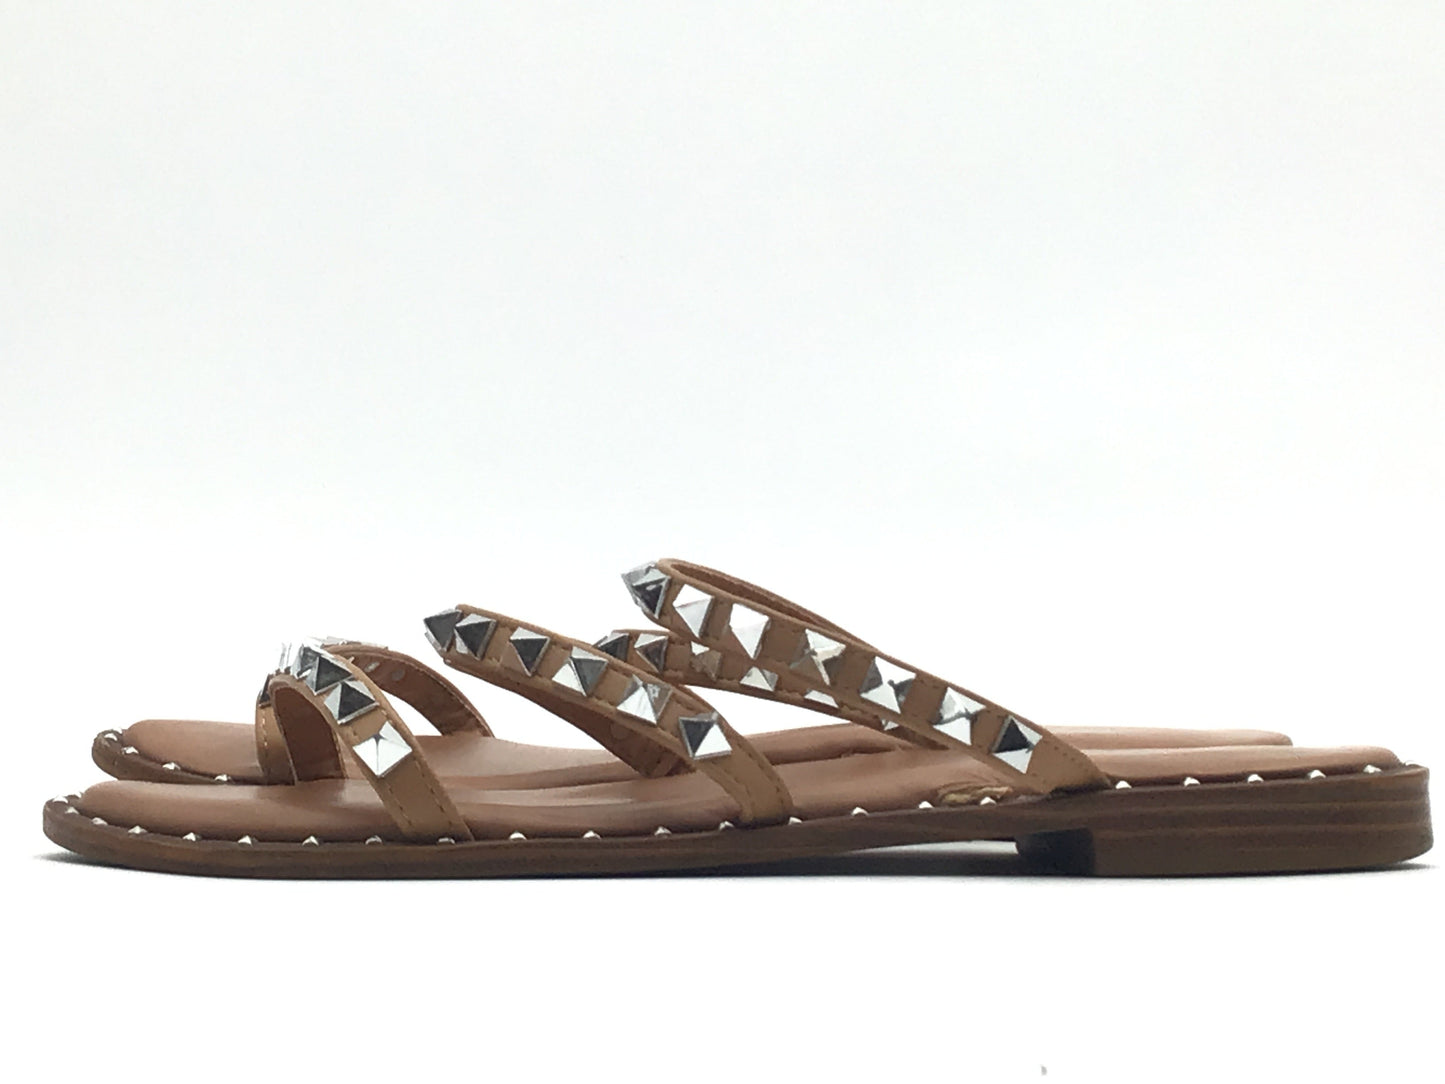 Tan Sandals Flip Flops Cushionaire, Size 7